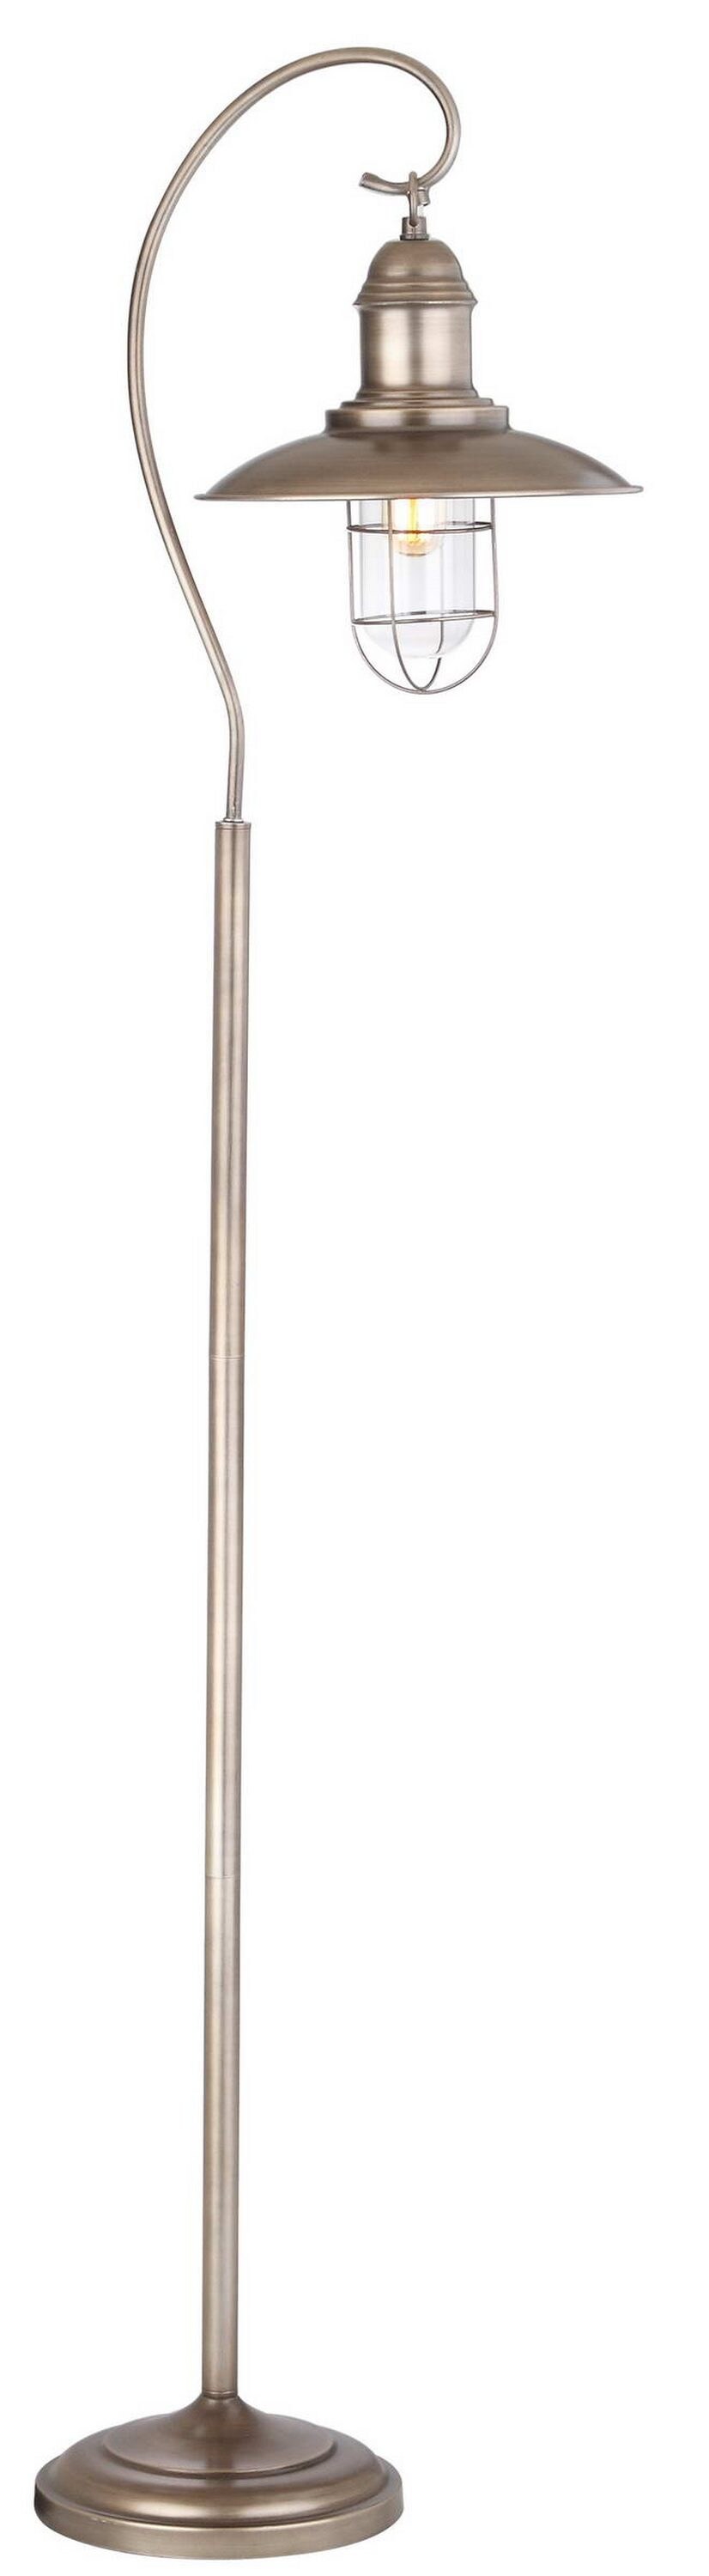 linovum BOSEA-A 50 cm de alto, acero inoxidable, IP44 Lámpara de pie para exteriores con 1 casquillo E27 